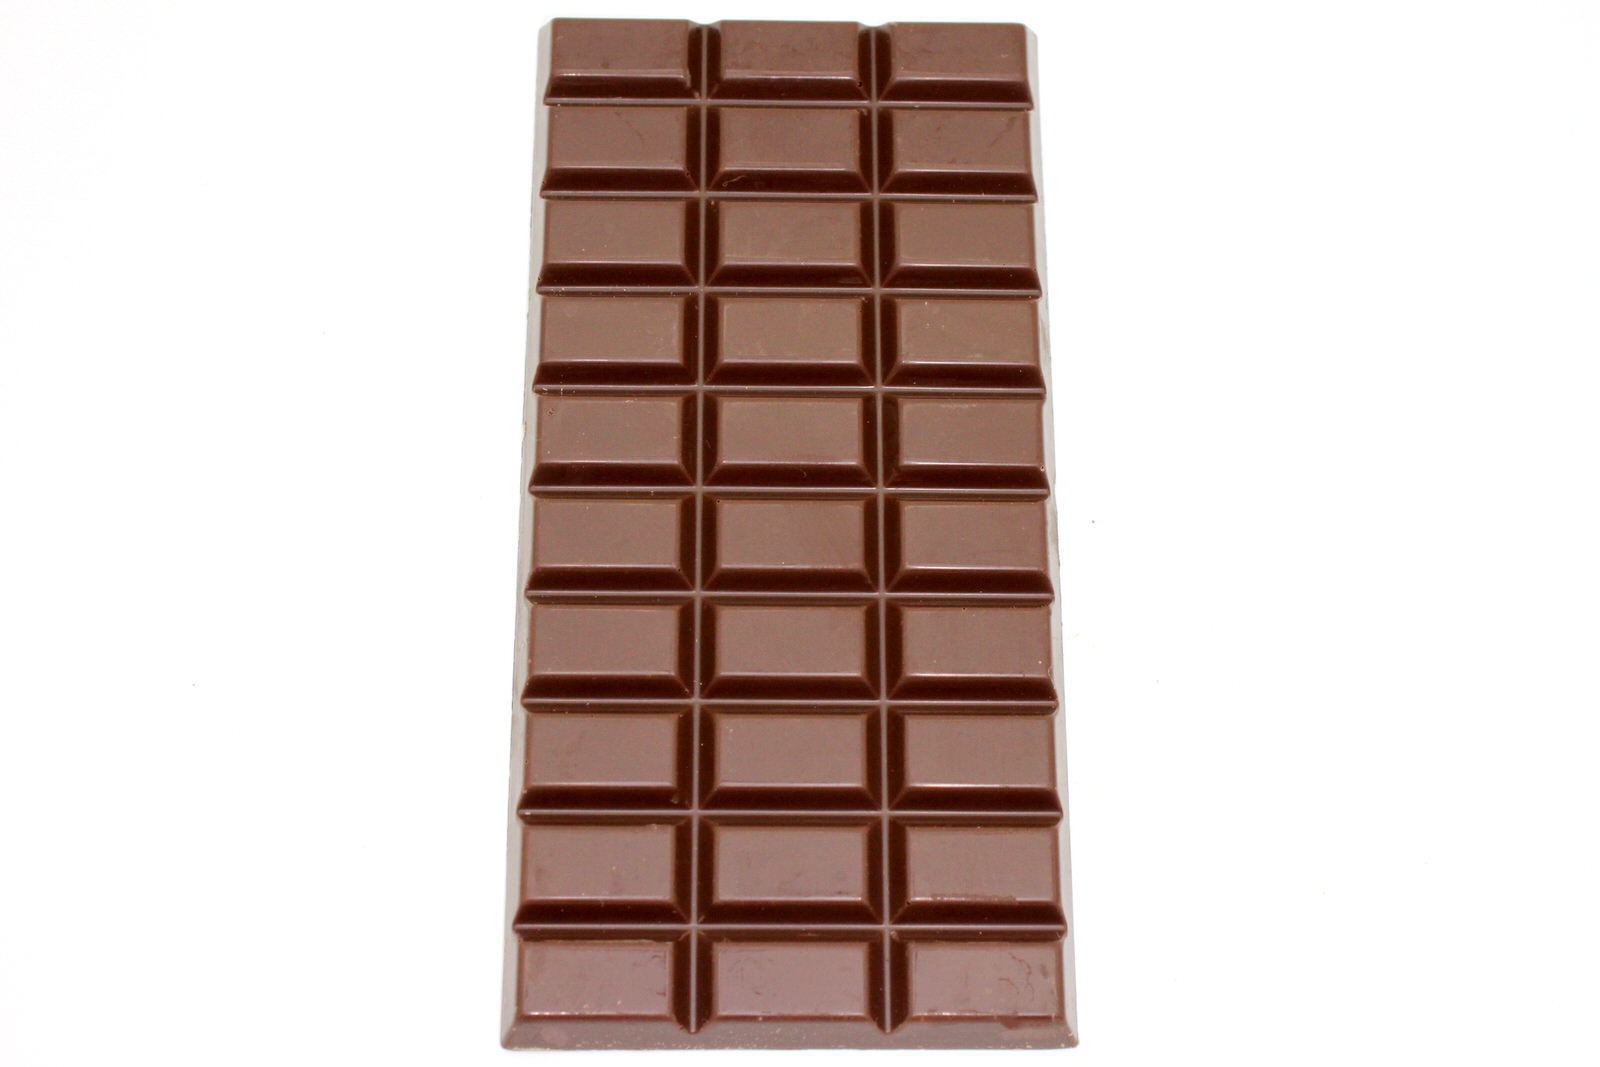 DATE FABRICATION CHOCOLAT EN TABLETTE